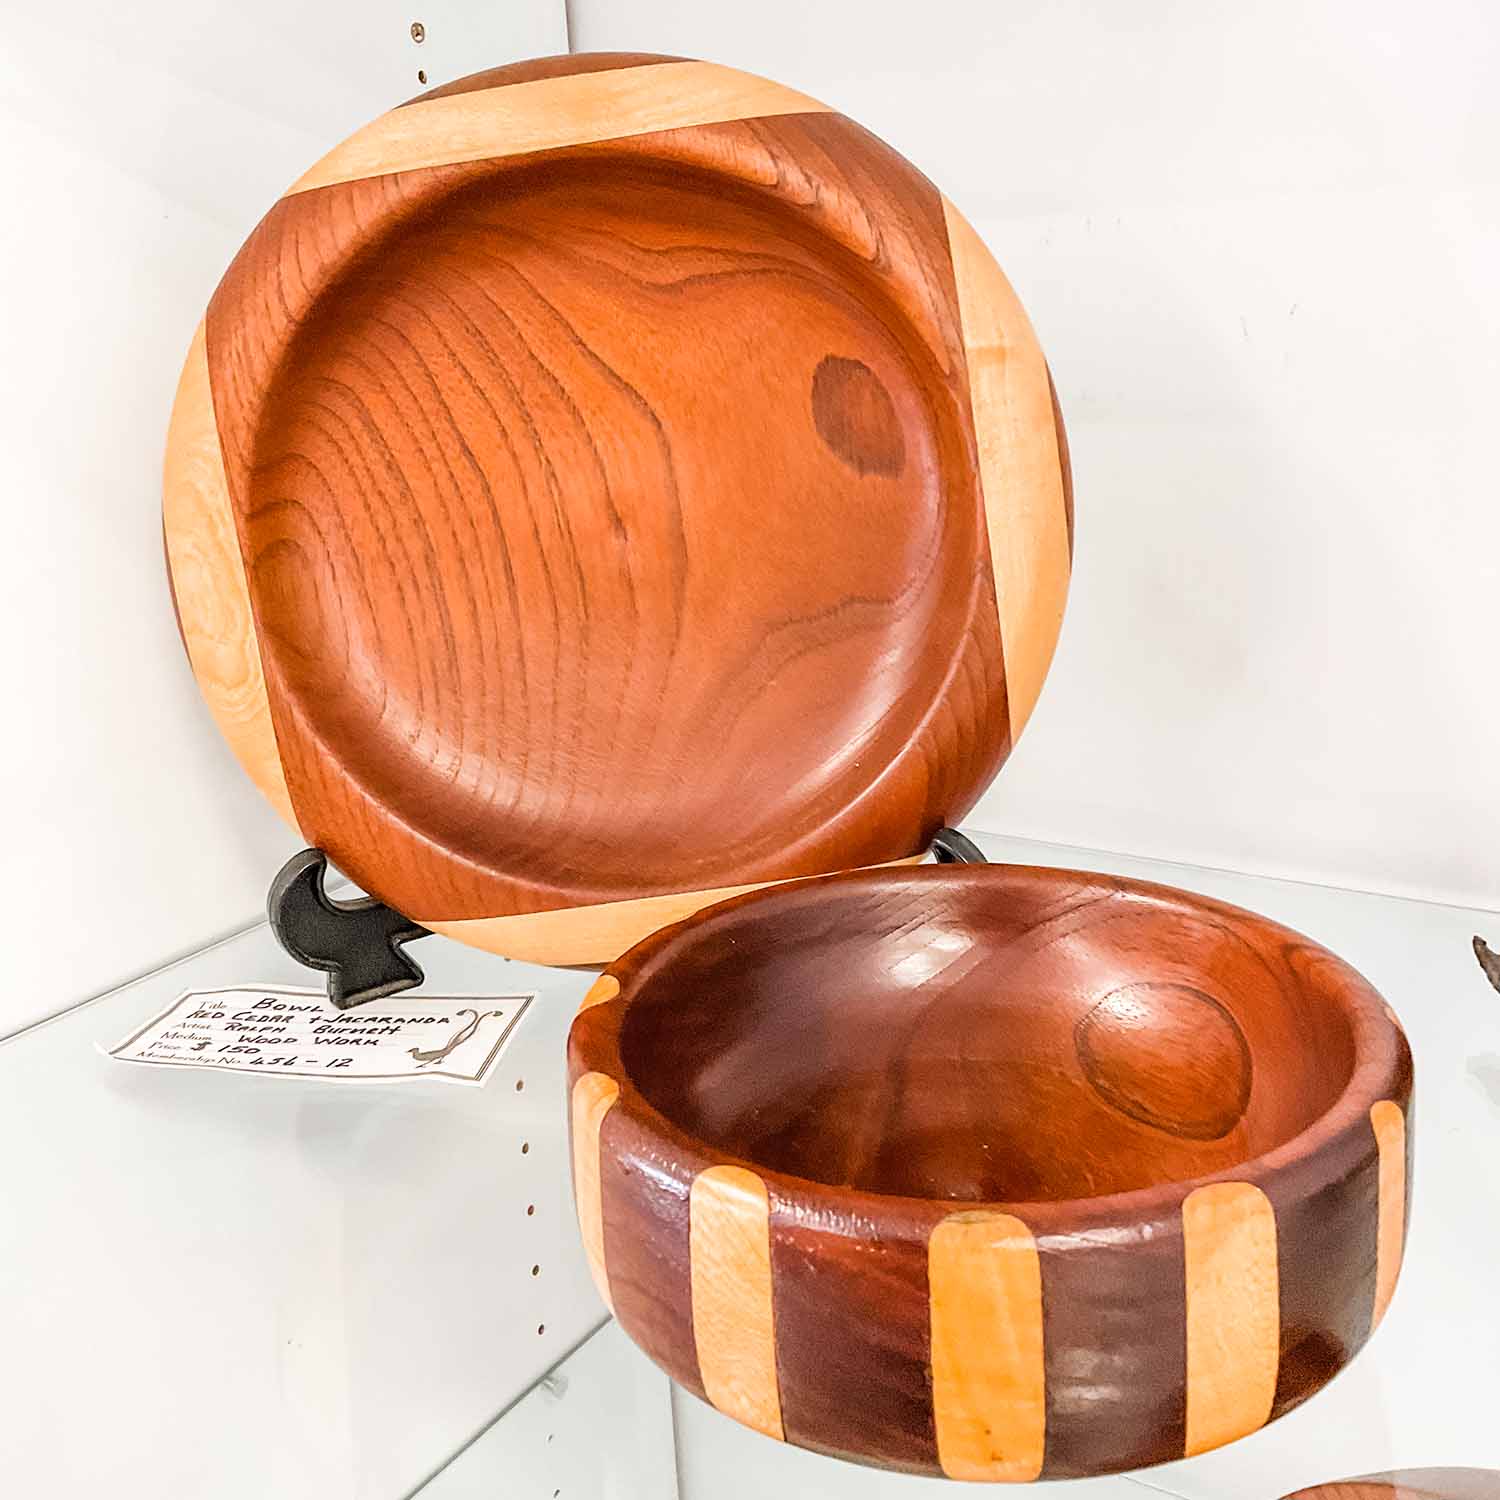 Wooden bowls by Ralph Burnett